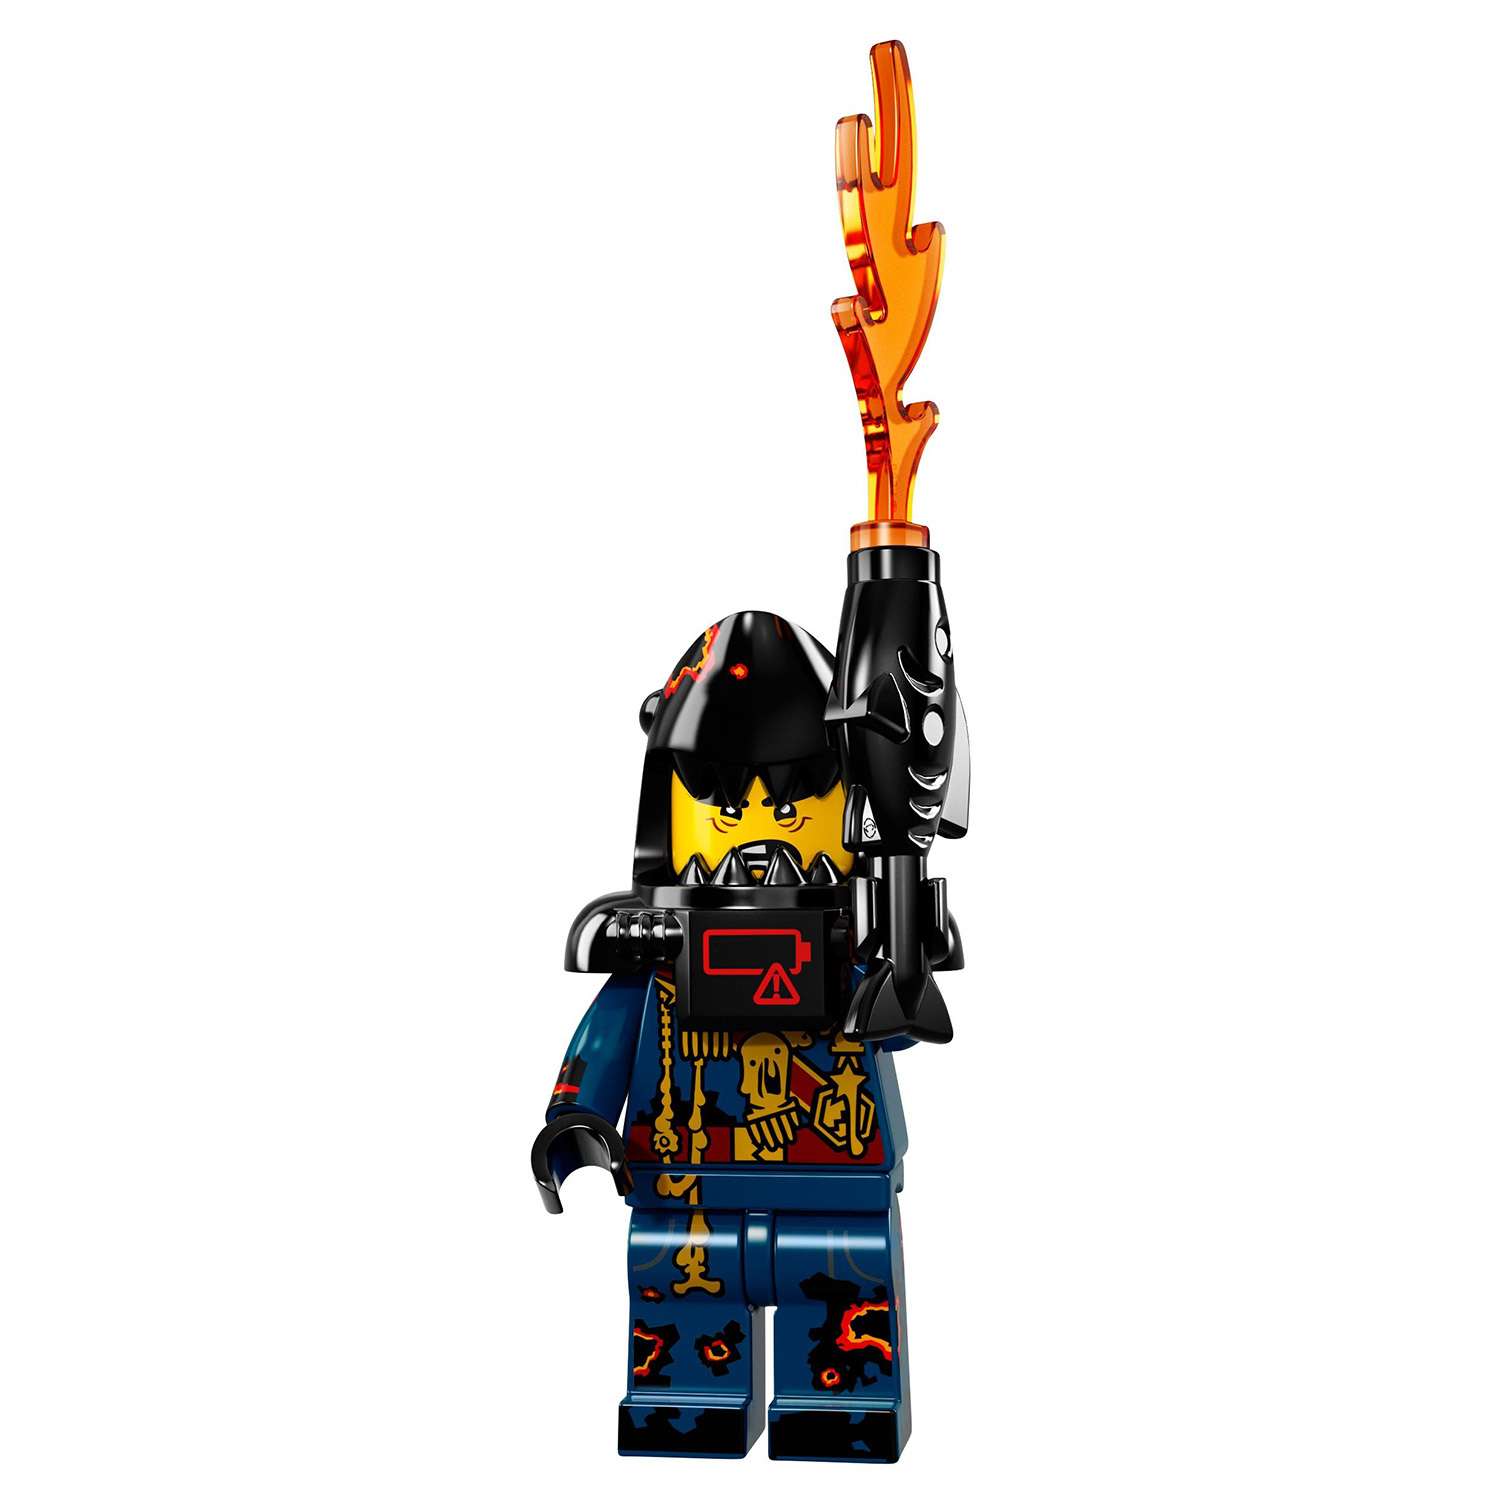 Конструктор LEGO Minifigures Минифигурки ФИЛЬМ: НИНДЗЯГО (71019) в ассортименте - фото 49